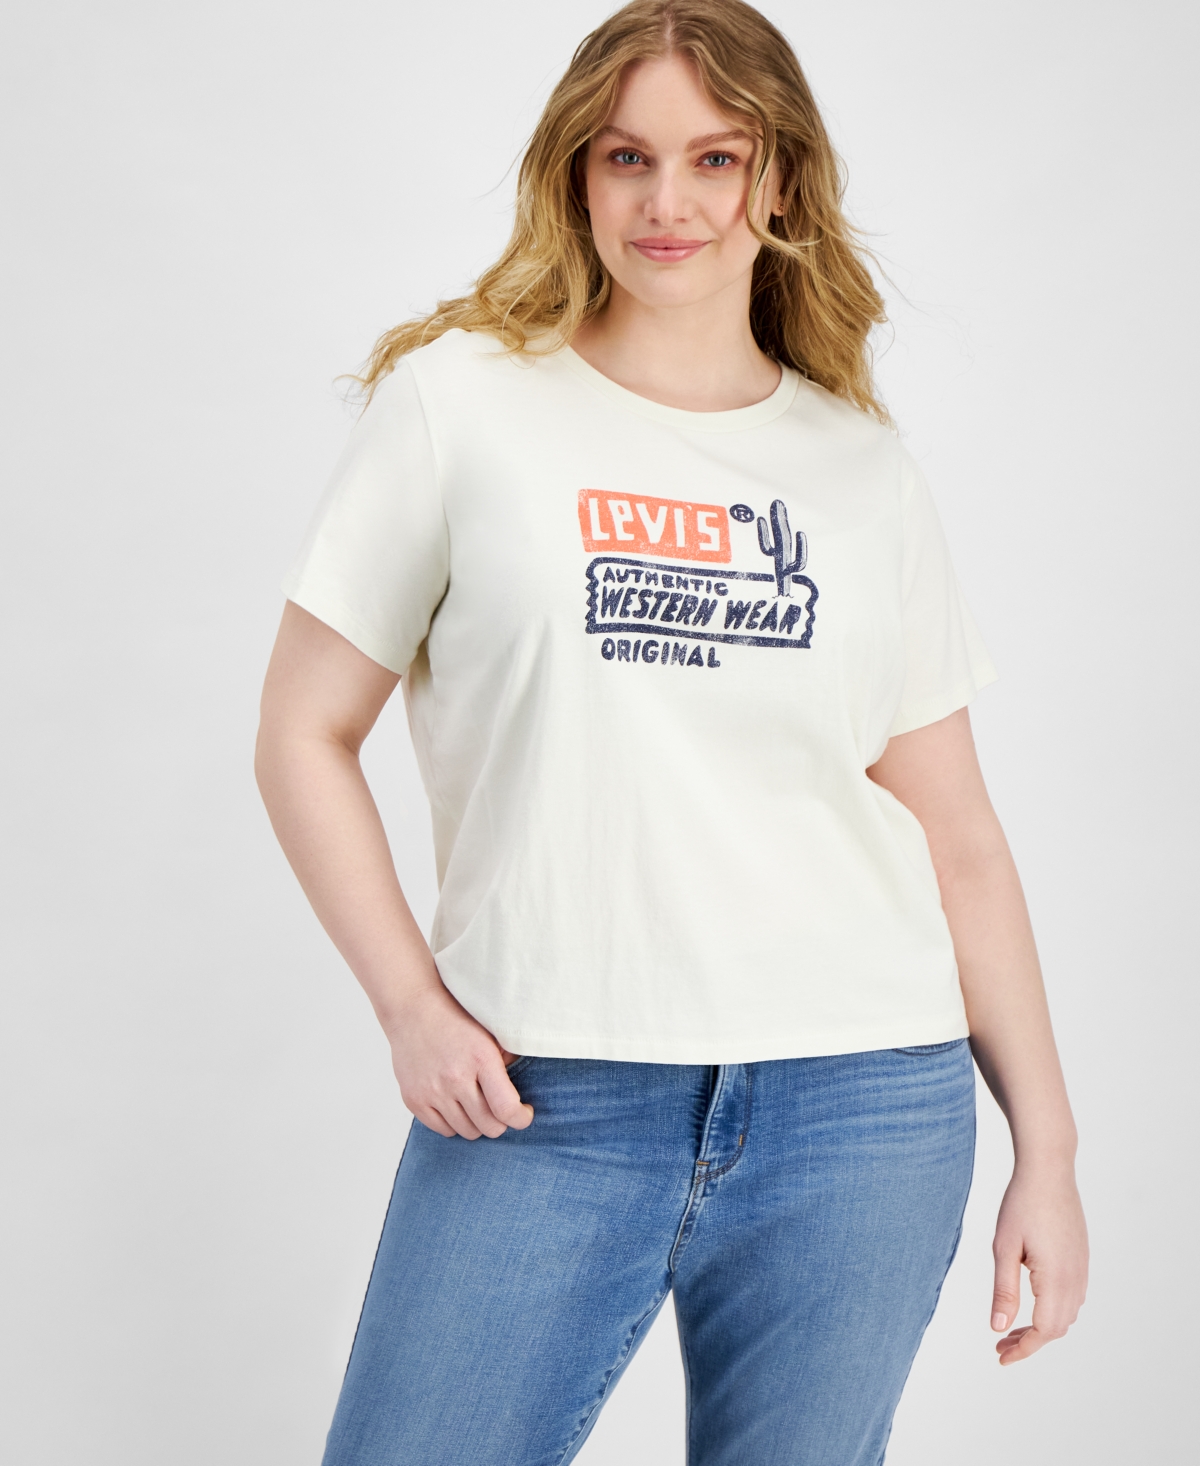 Plus Size Graphic Authentic Cotton Short-Sleeve T-Shirt - Authentic Western Wear Egret